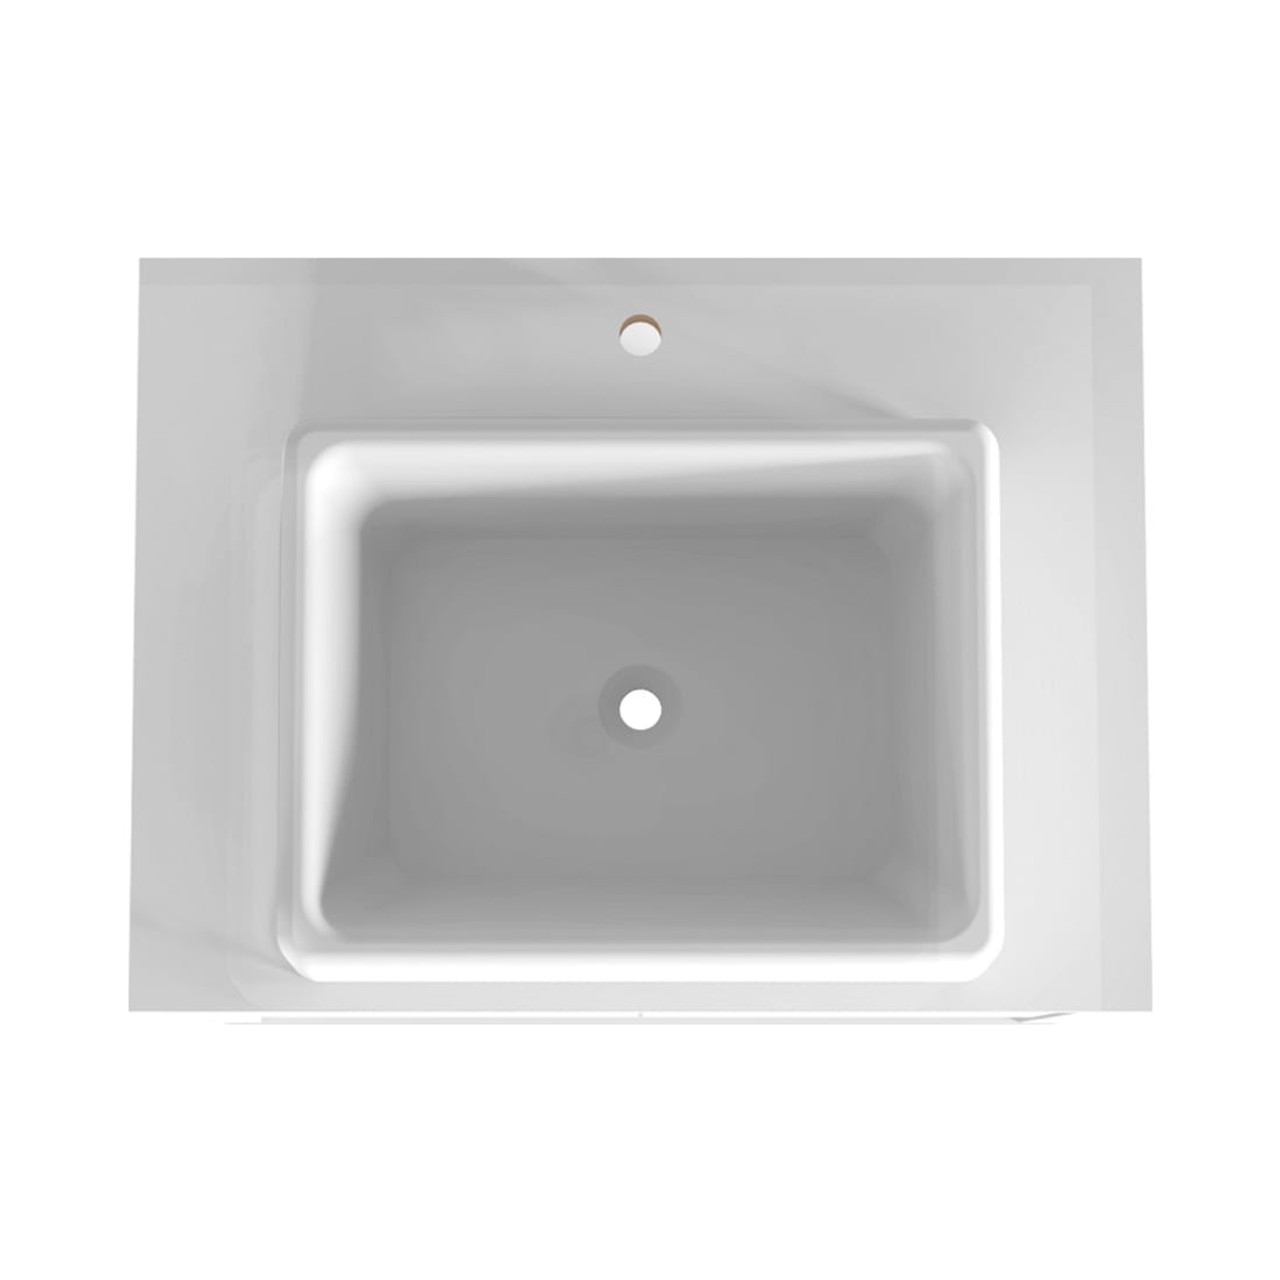 Liberty 23.62” Bathroom Vanity Sink in White